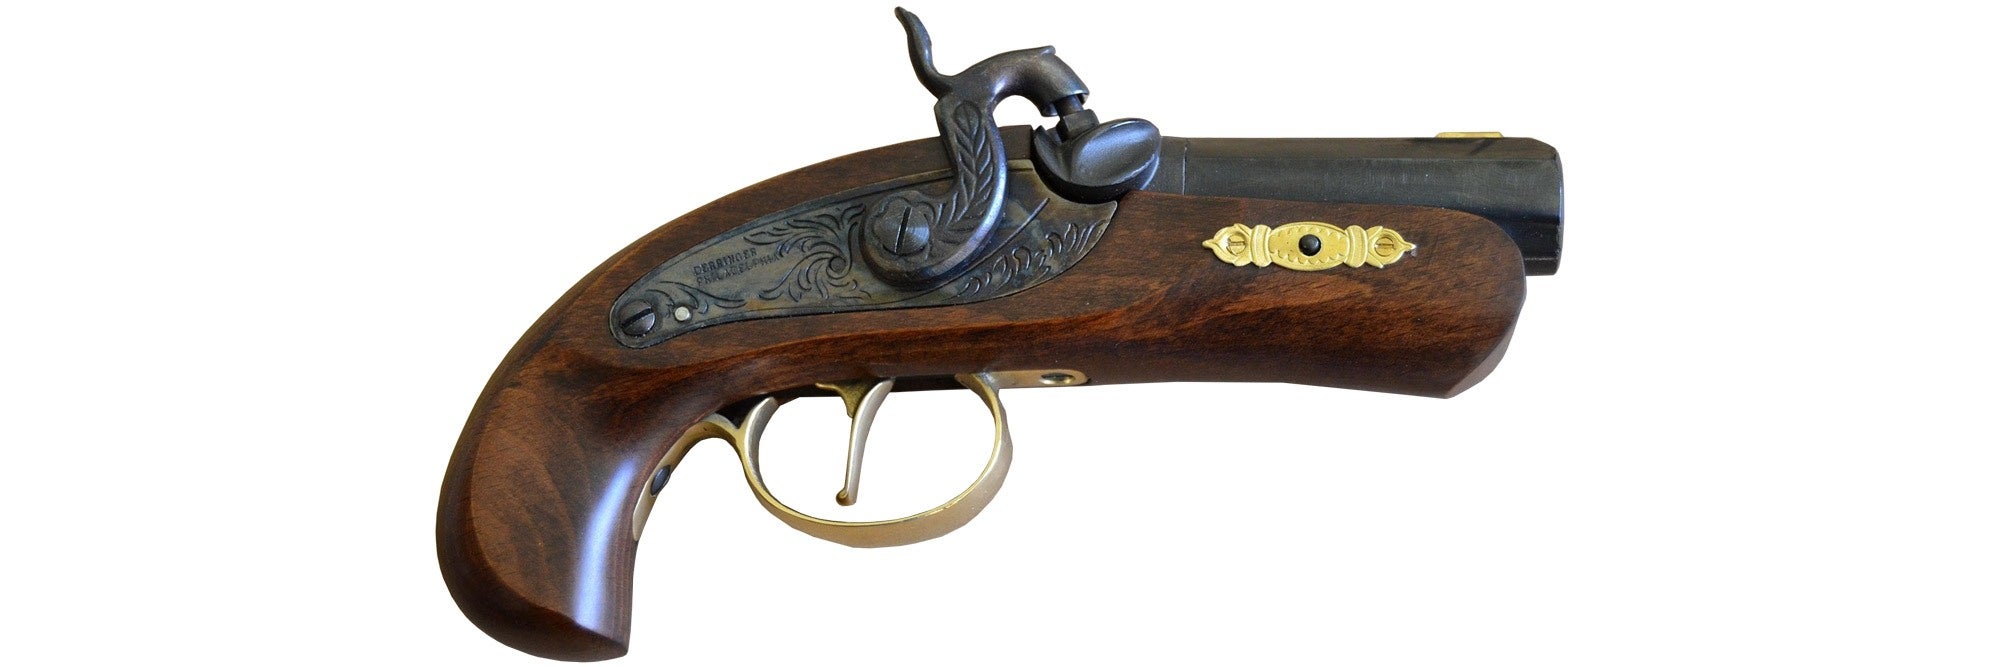 Traditions™ Philadelphia Derringer Pistol - .45 Cal P1015